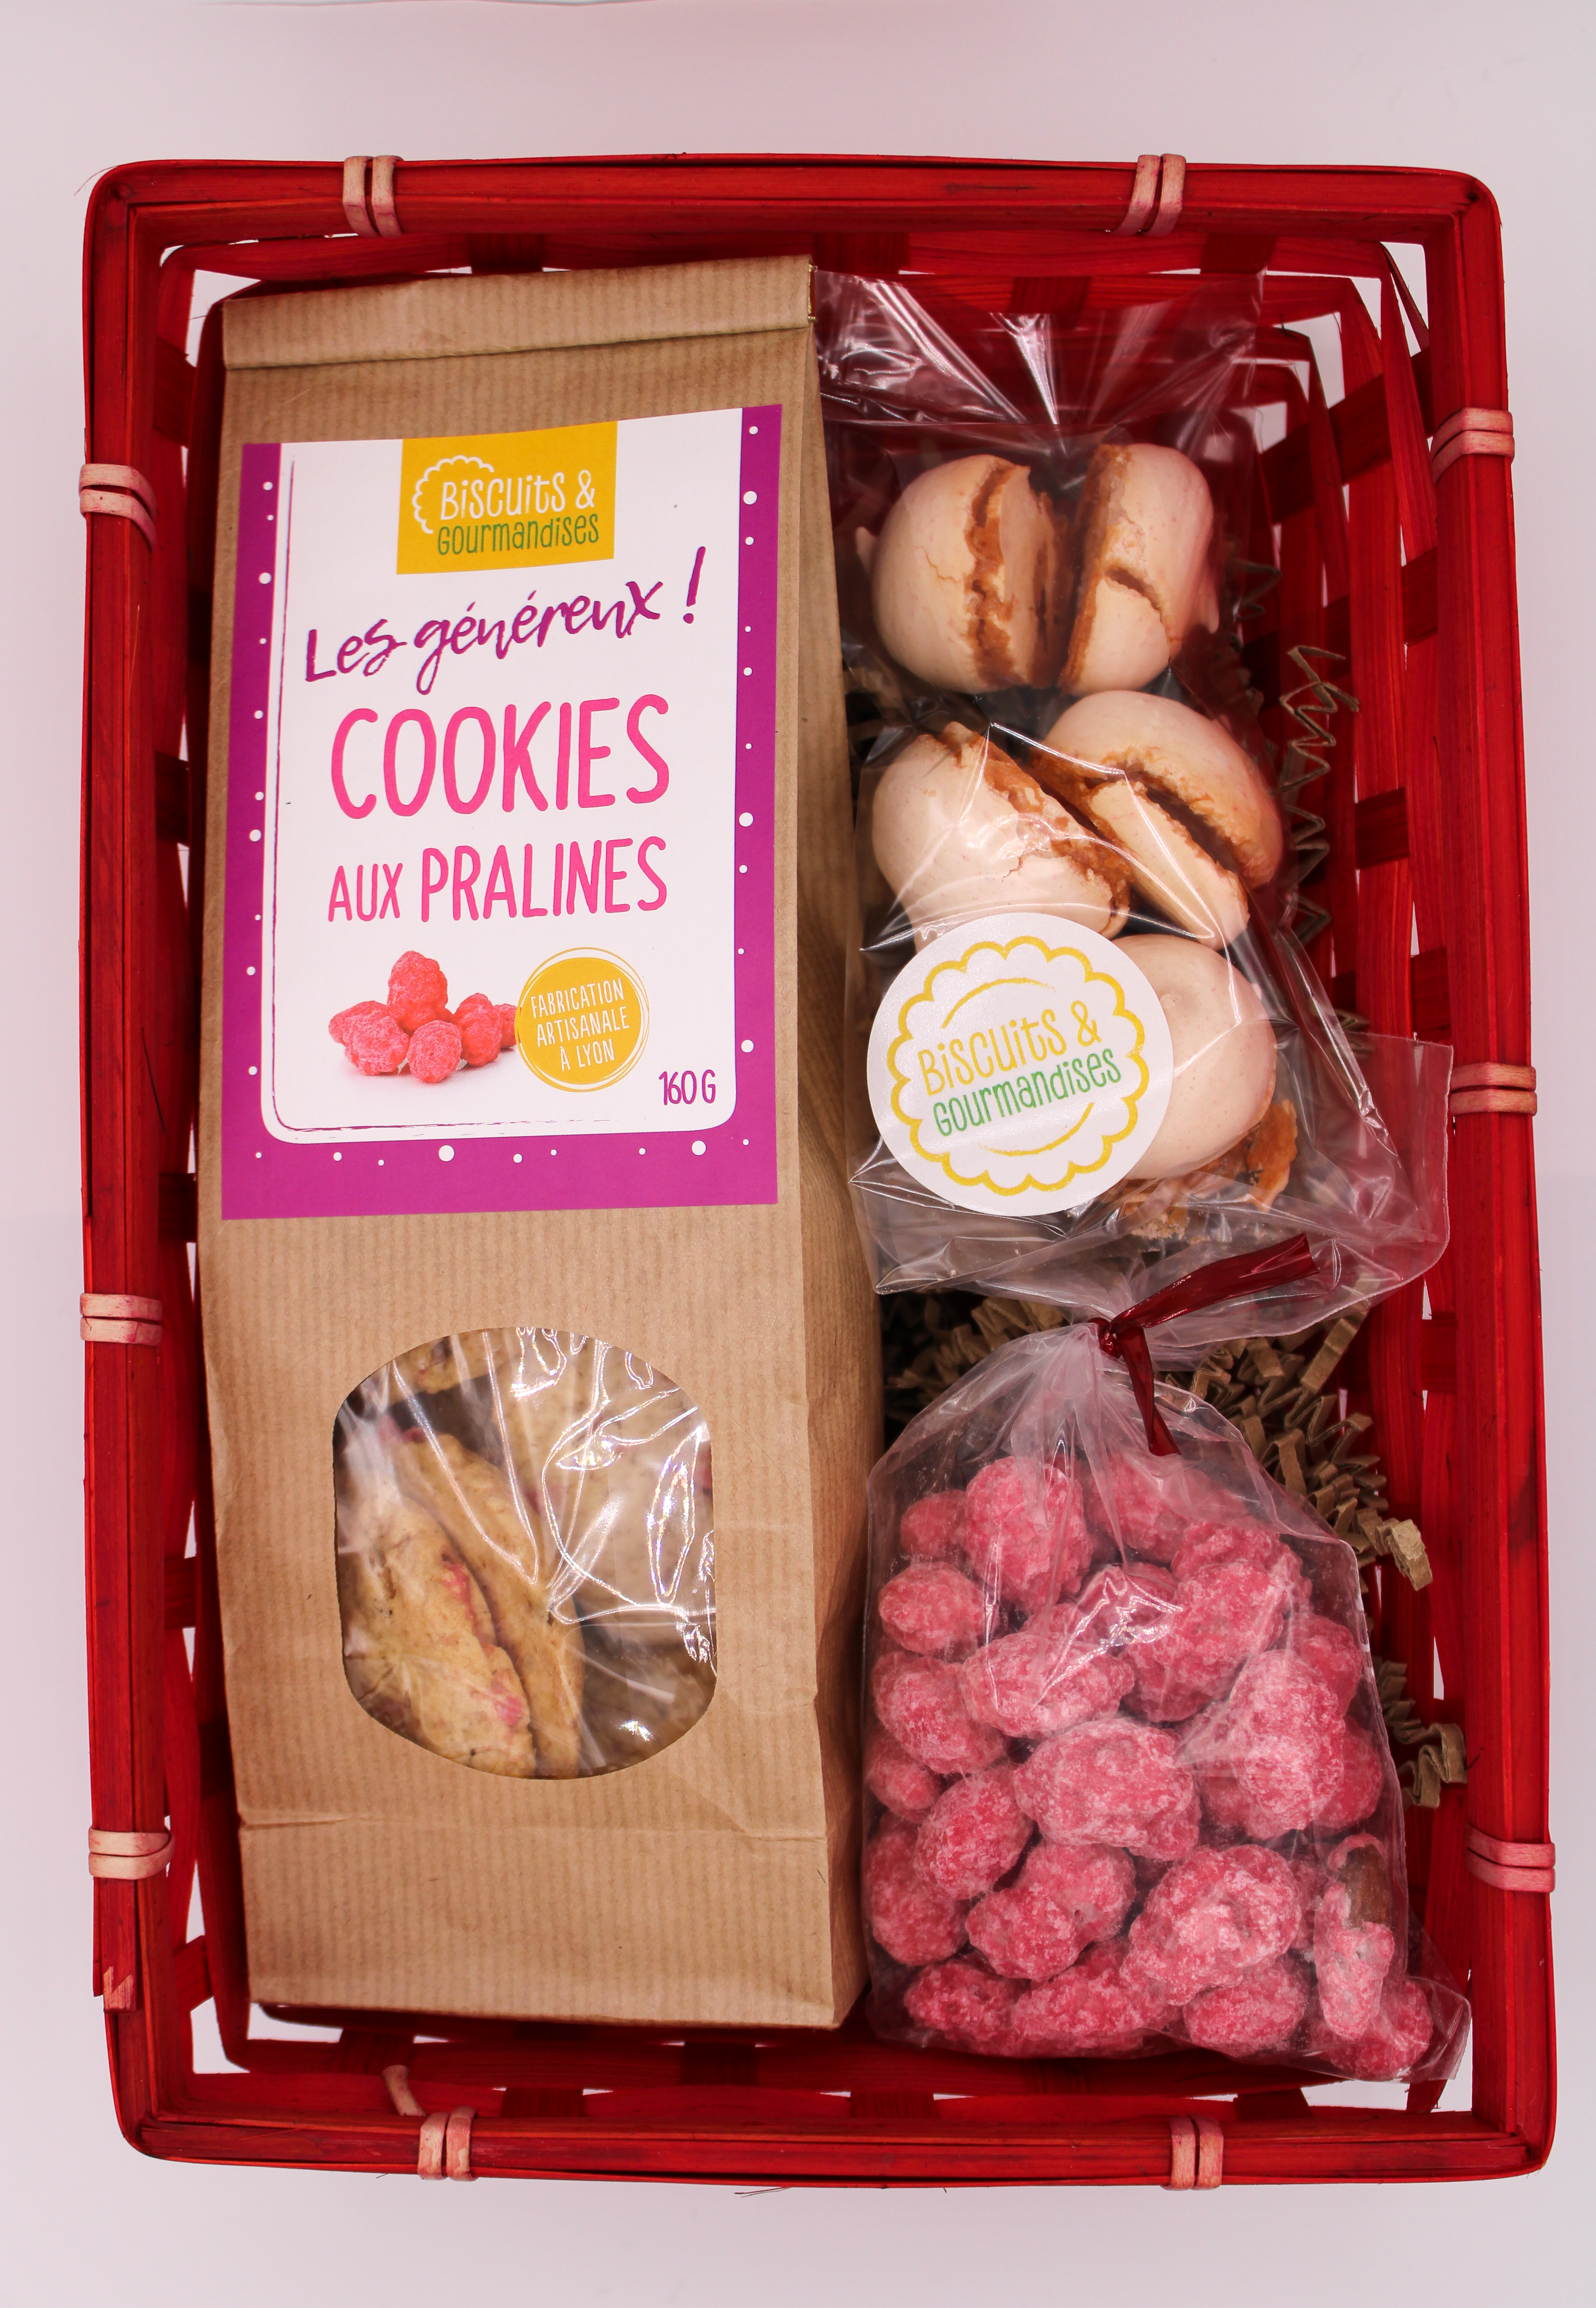 Un coffret dans son panier rouge contenant un paquet de cookie au praline, des meringue ainsie qu'un sachet de praline rose